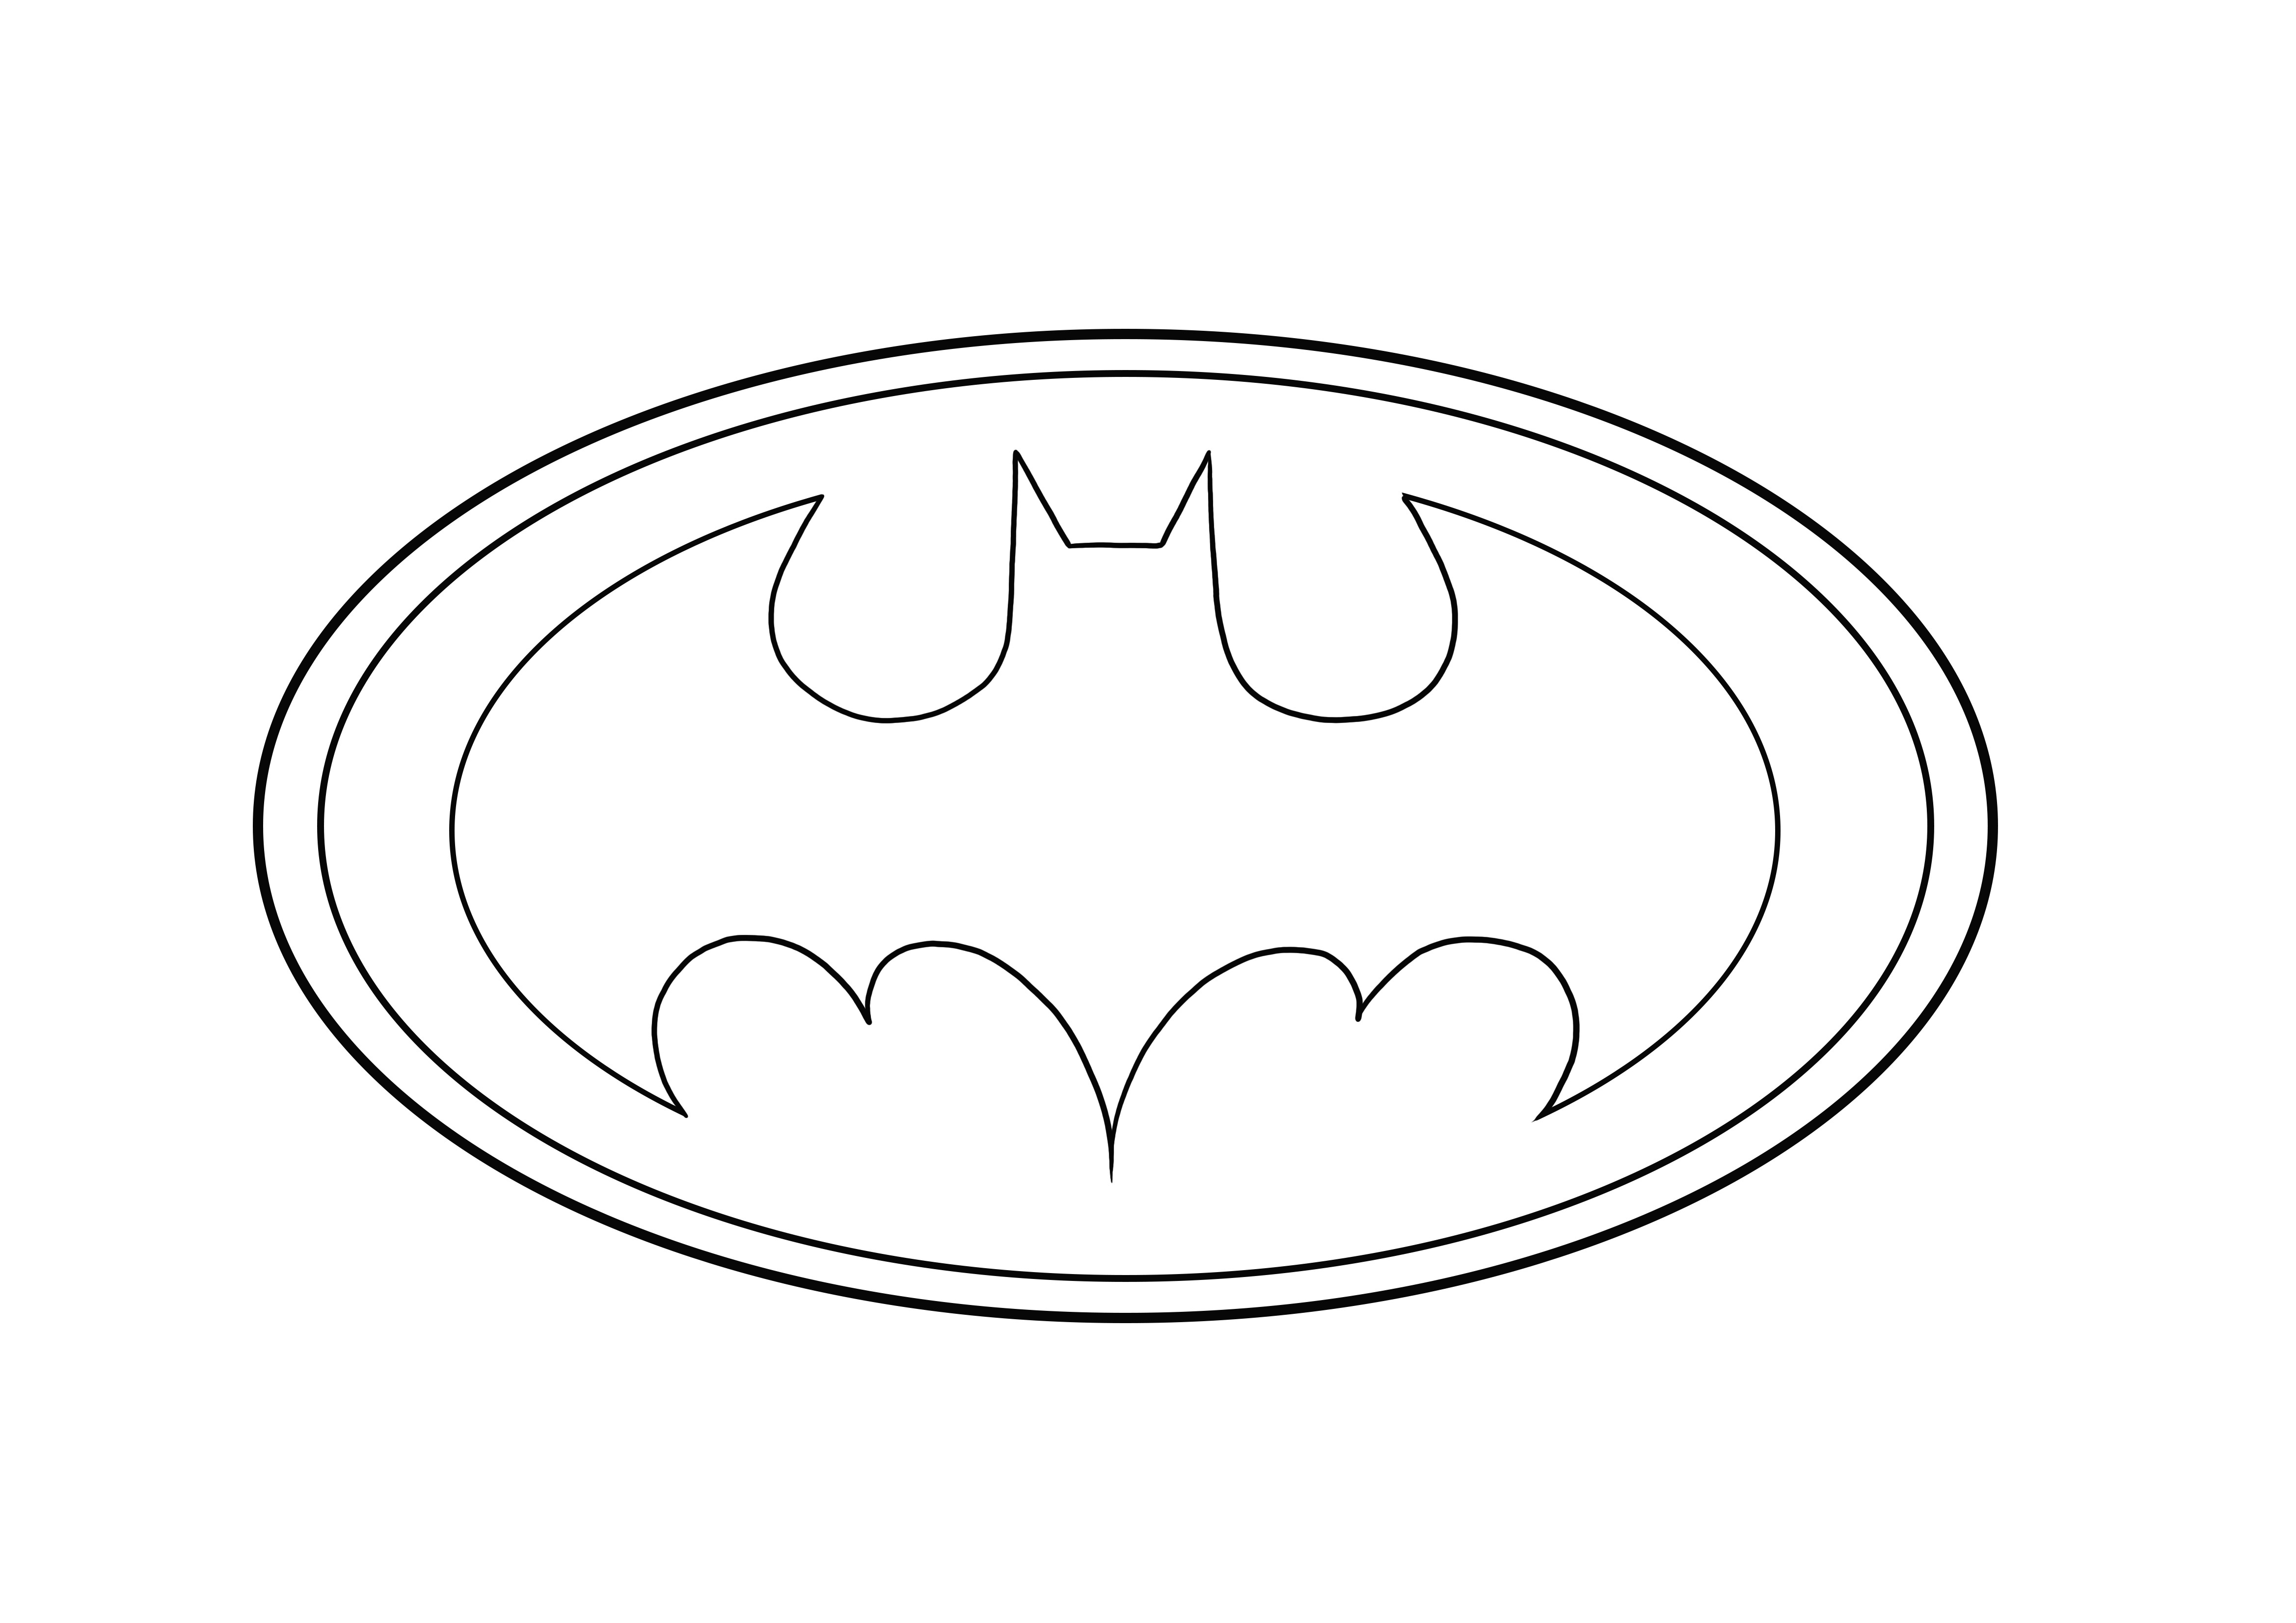 Logo Batman siap diunduh dan diwarnai secara gratis